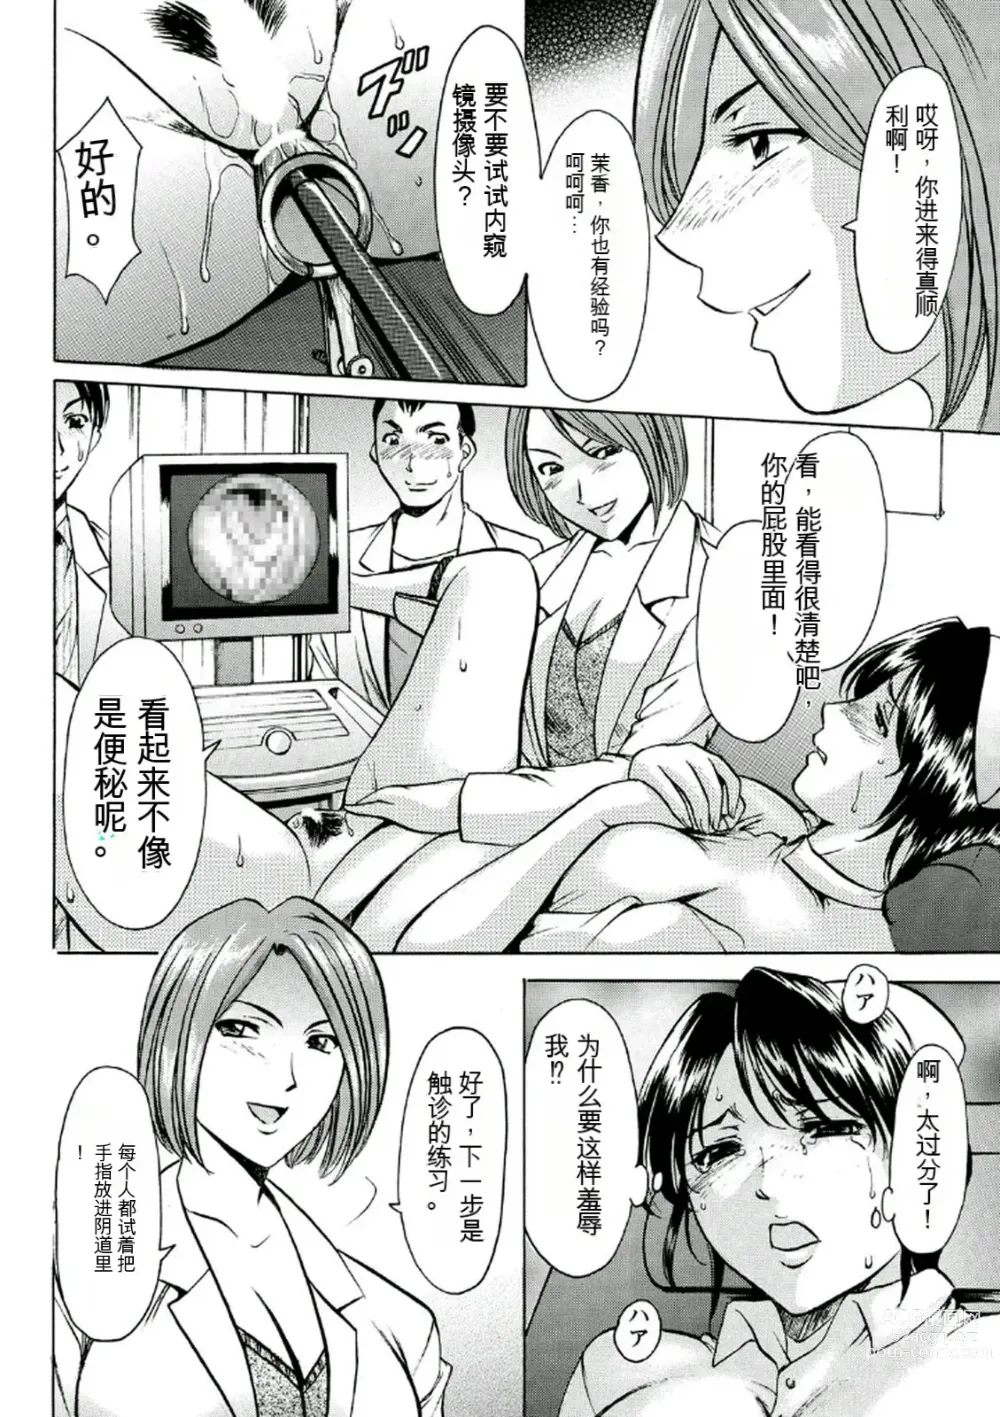 Page 36 of manga Chijoku Byoutou -Hakui no Datenshi-